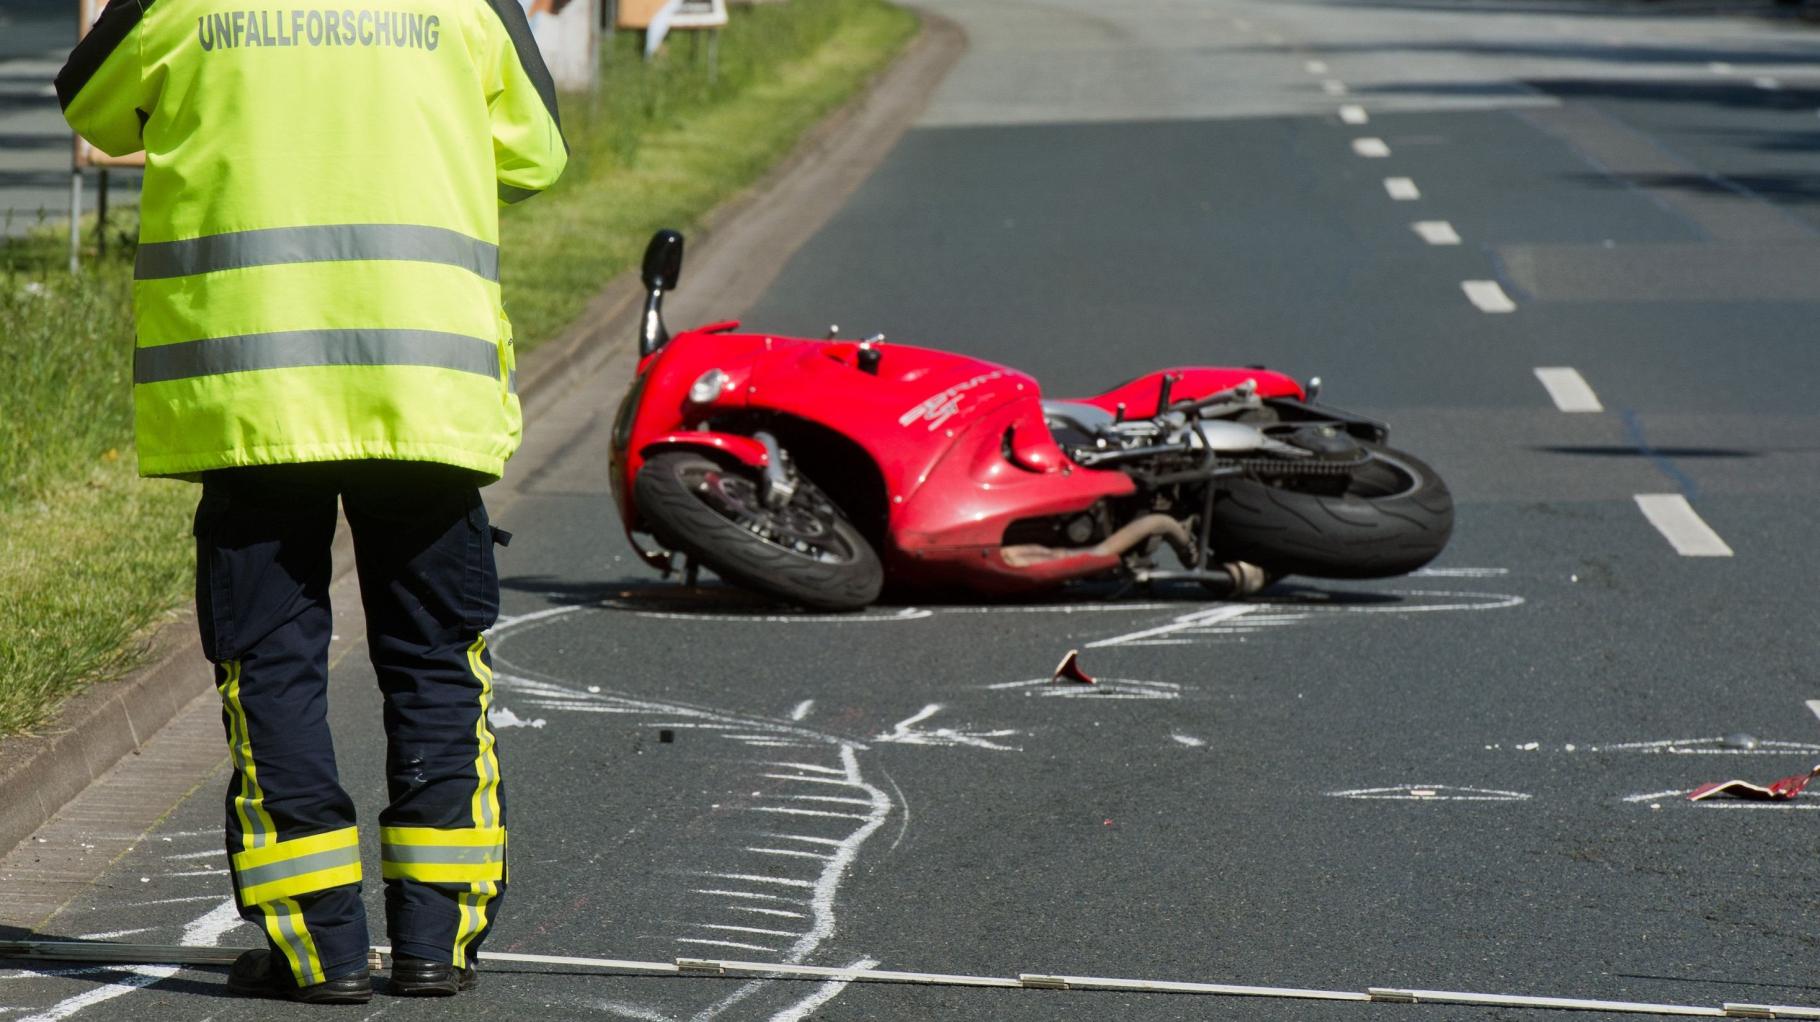 Motorradfahrer nach Verkehrsunfall nahe Dummerstorf schwer verletzt